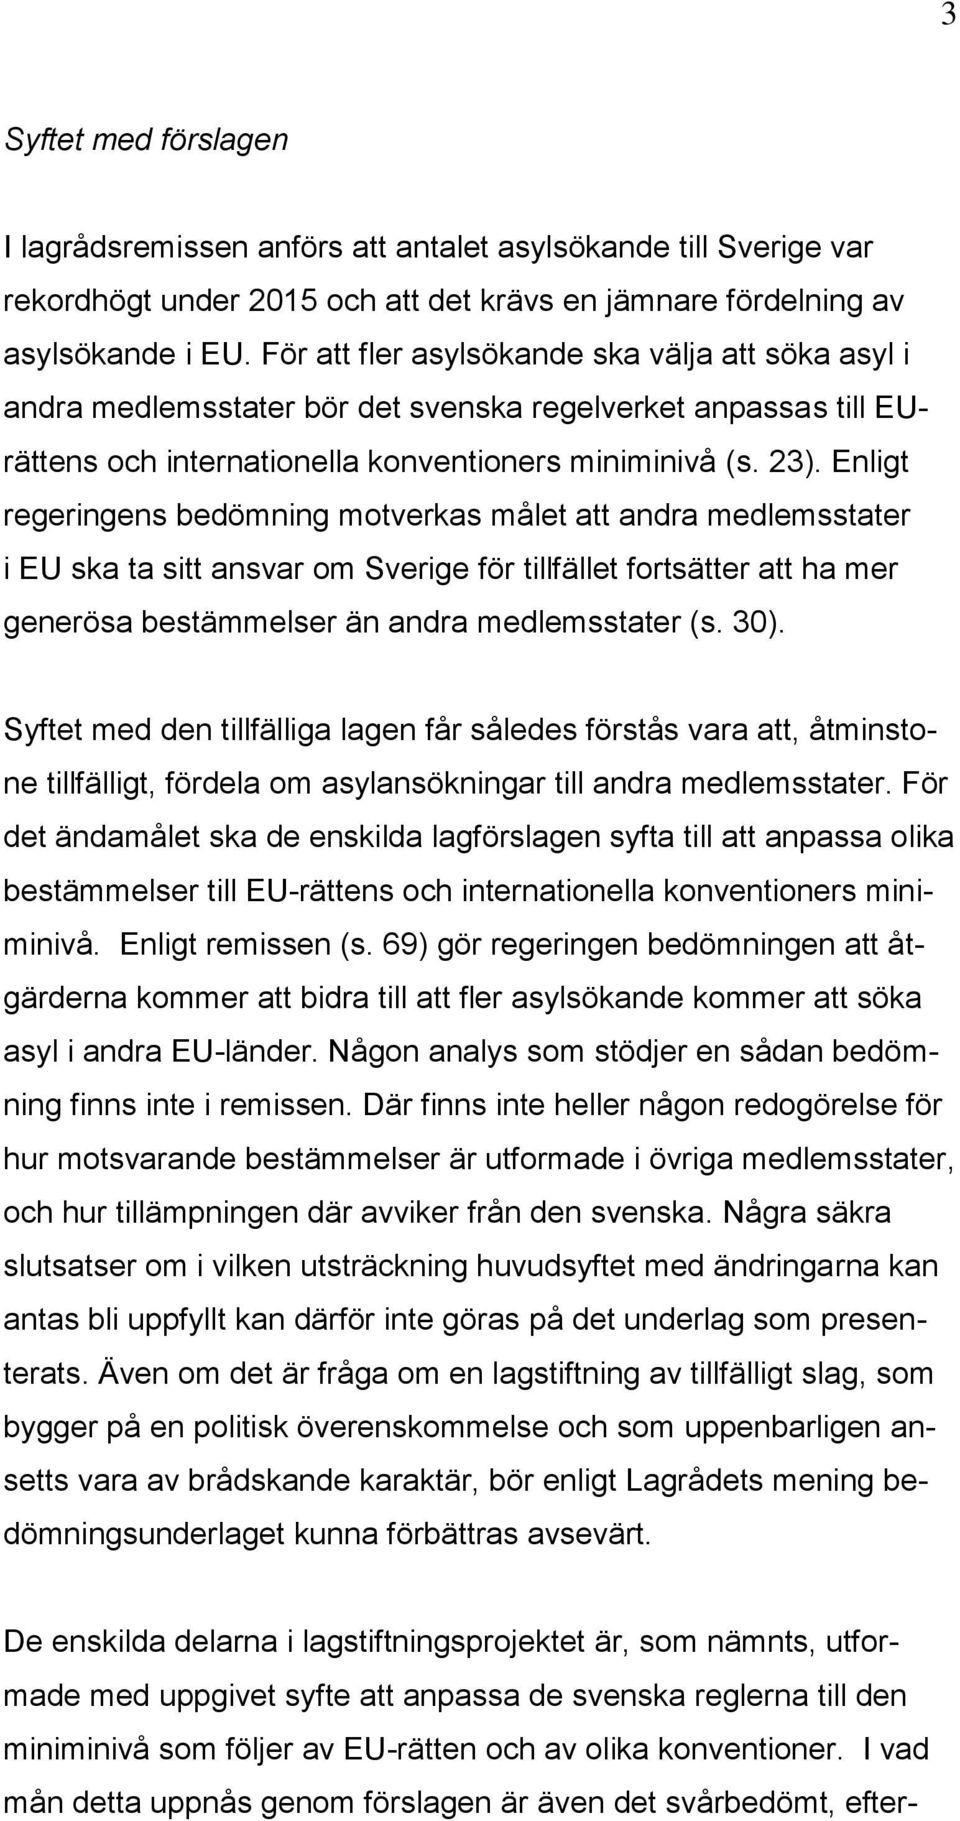 Enligt regeringens bedömning motverkas målet att andra medlemsstater i EU ska ta sitt ansvar om Sverige för tillfället fortsätter att ha mer generösa bestämmelser än andra medlemsstater (s. 30).